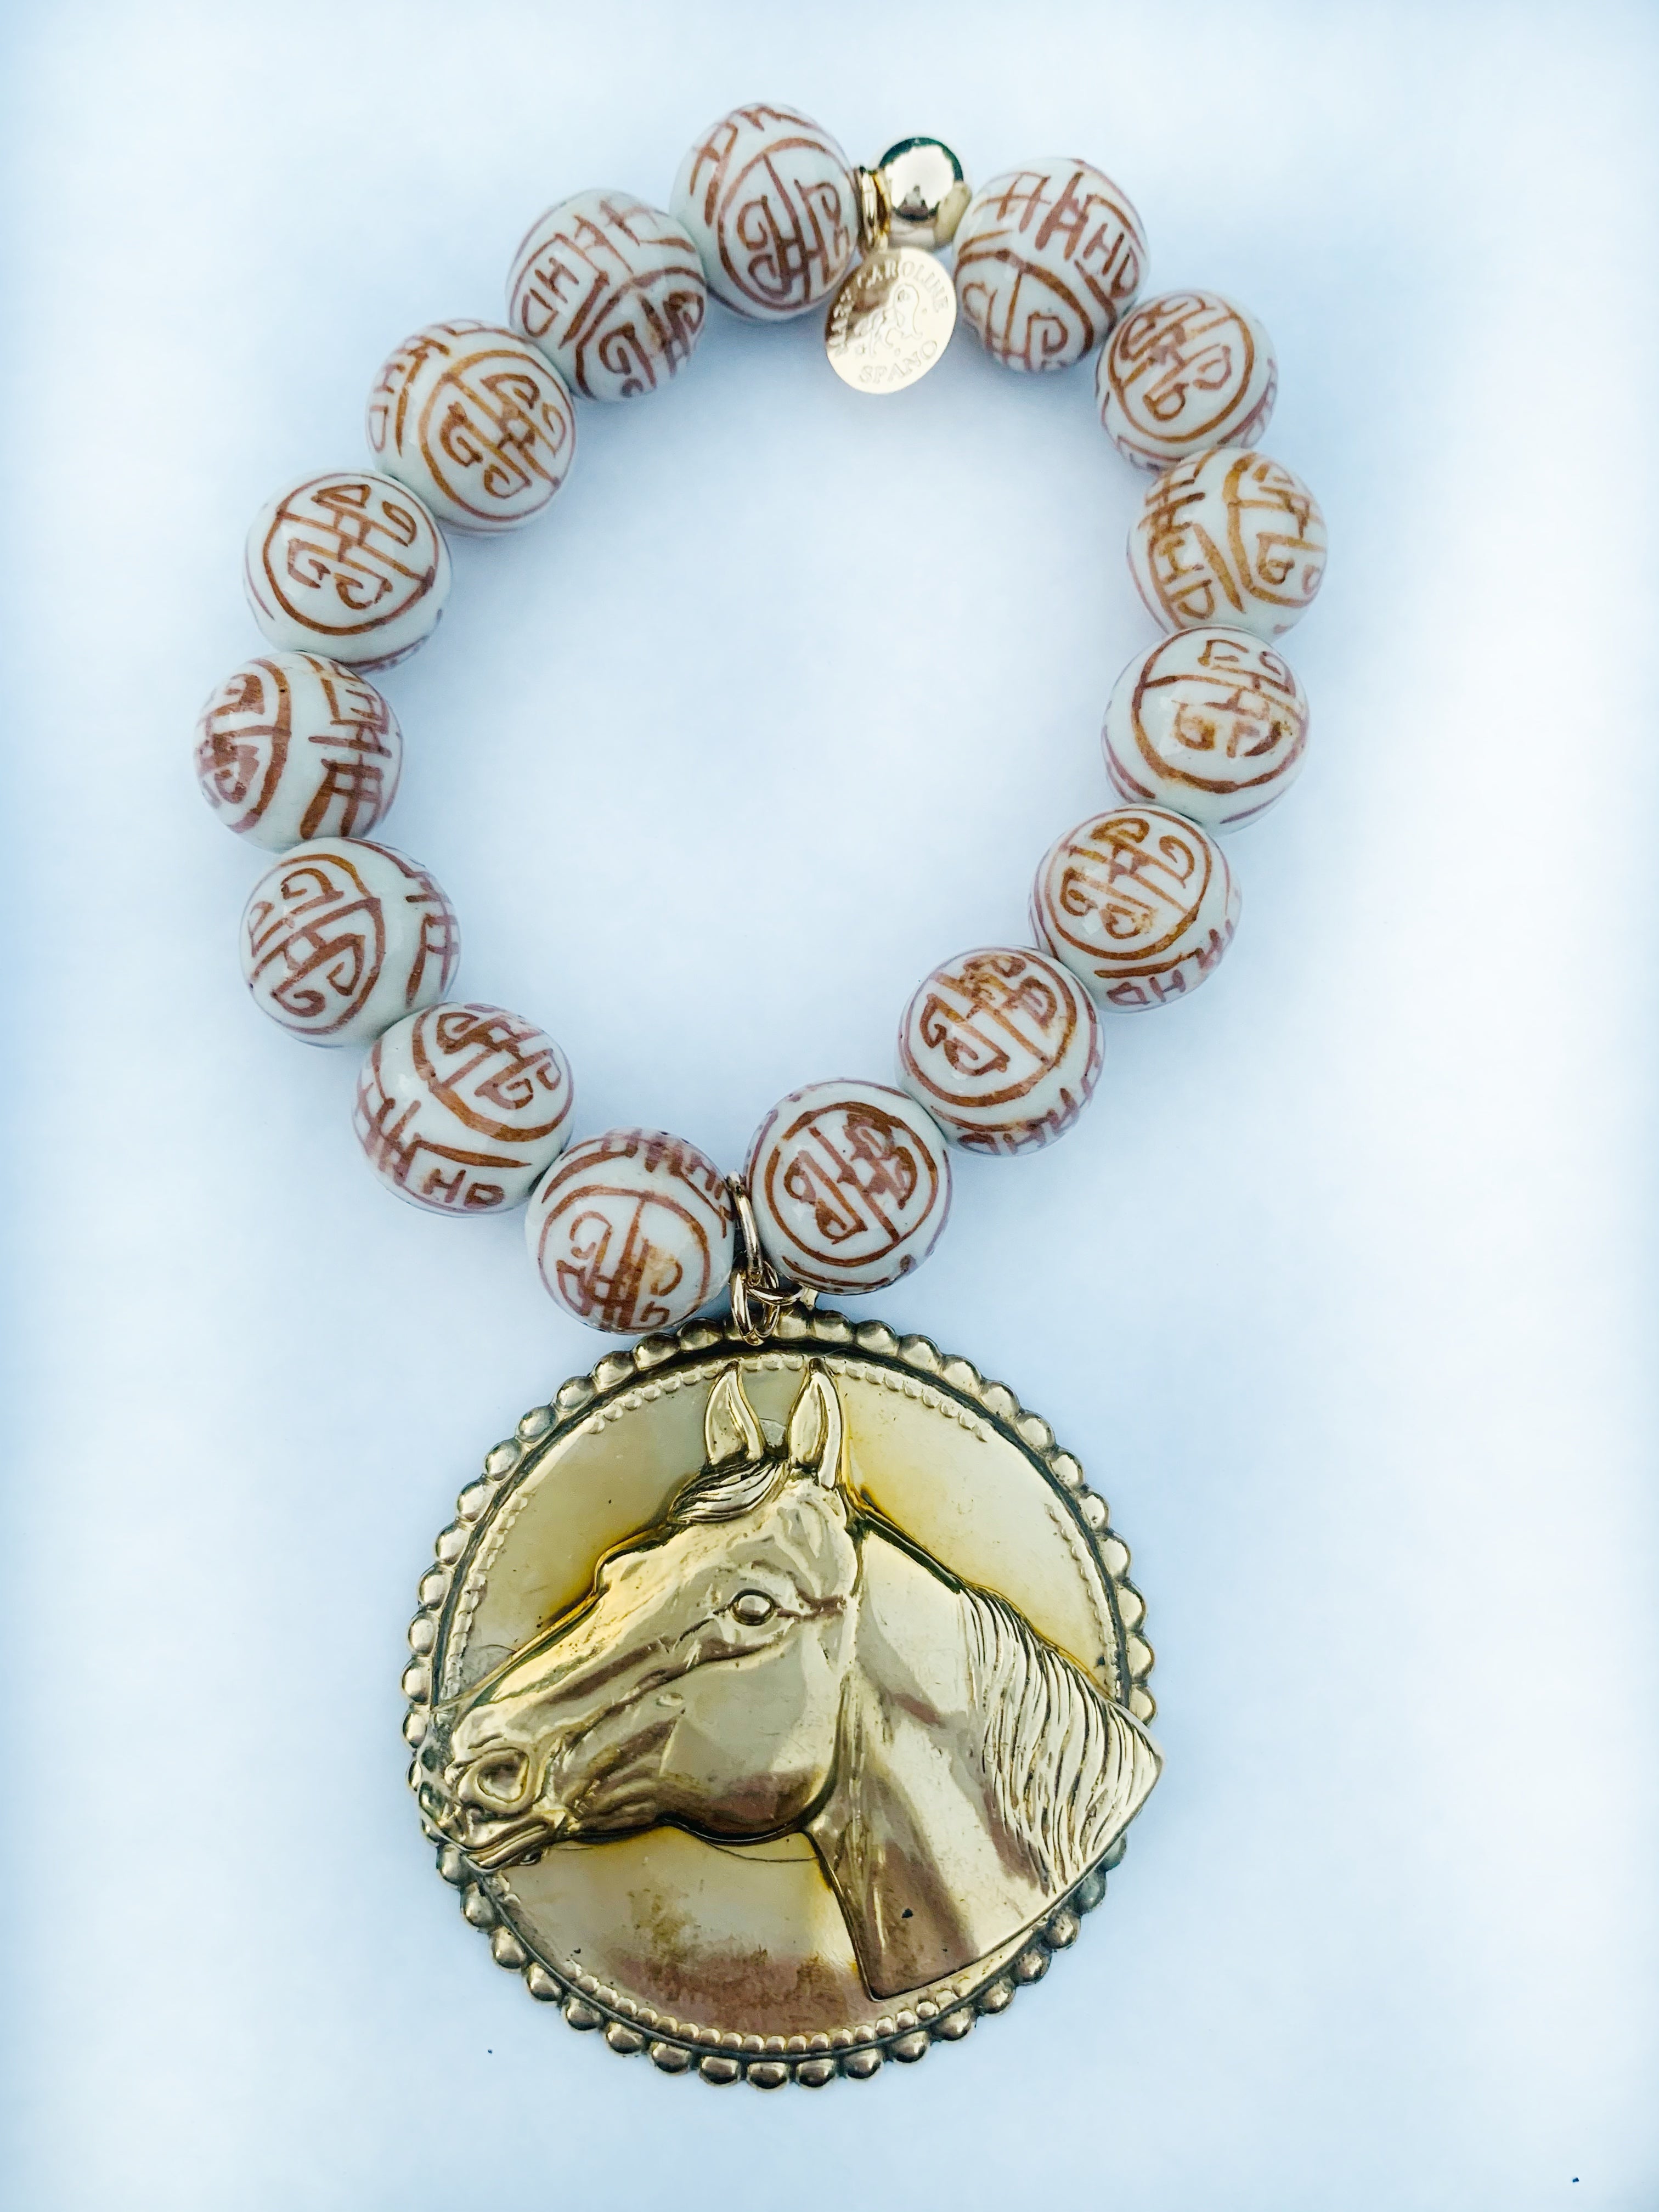 Patricia’s equestrian cappacinno brown bracelet